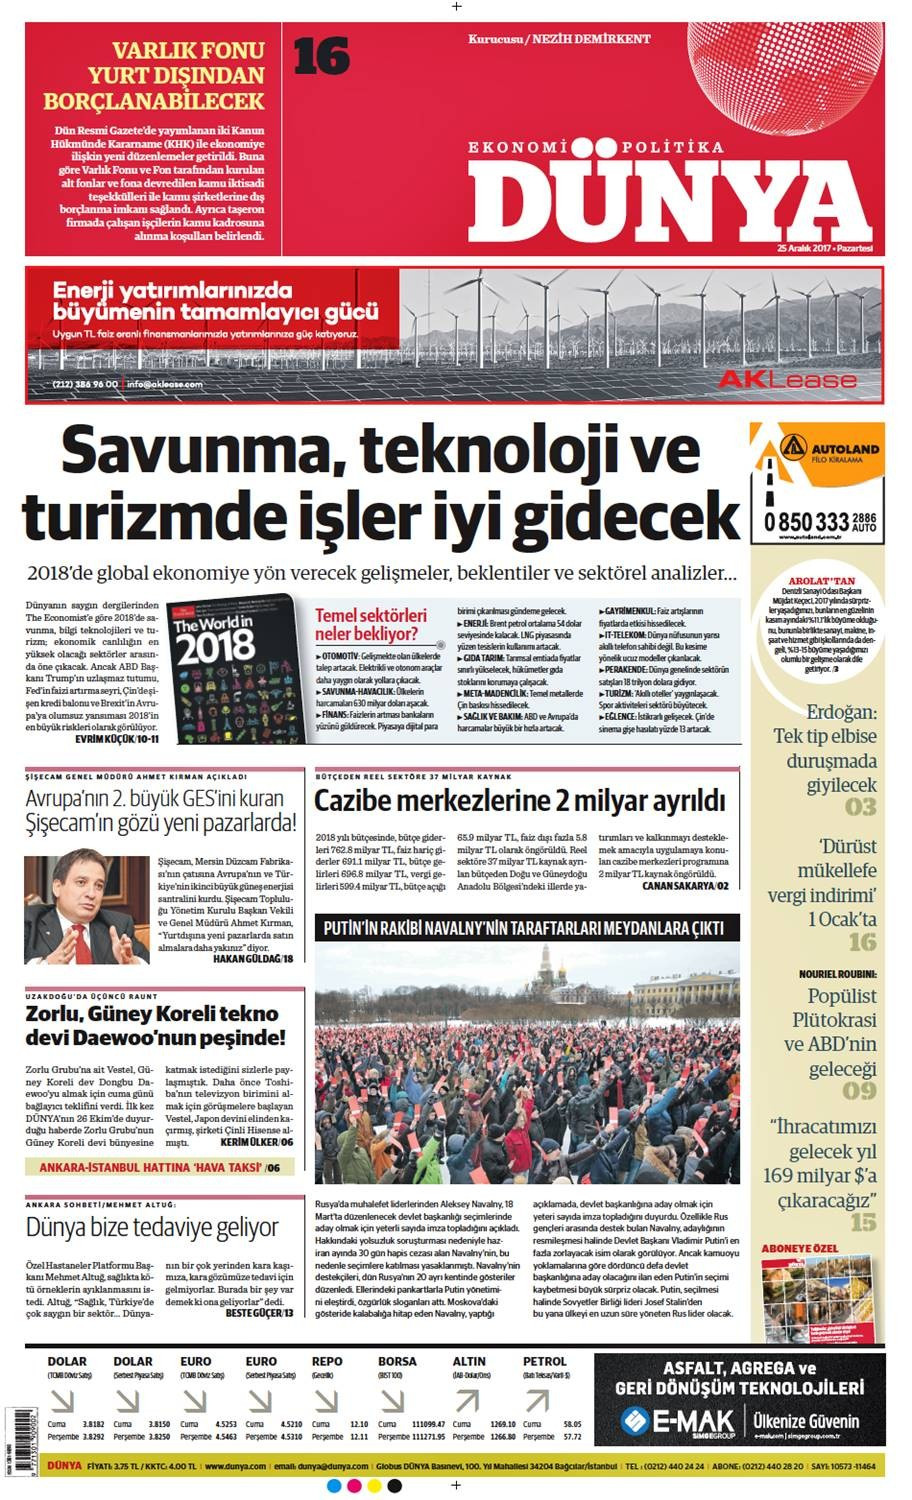 Günün gazete manşetleri (25 Aralık 2017) - Sayfa 1